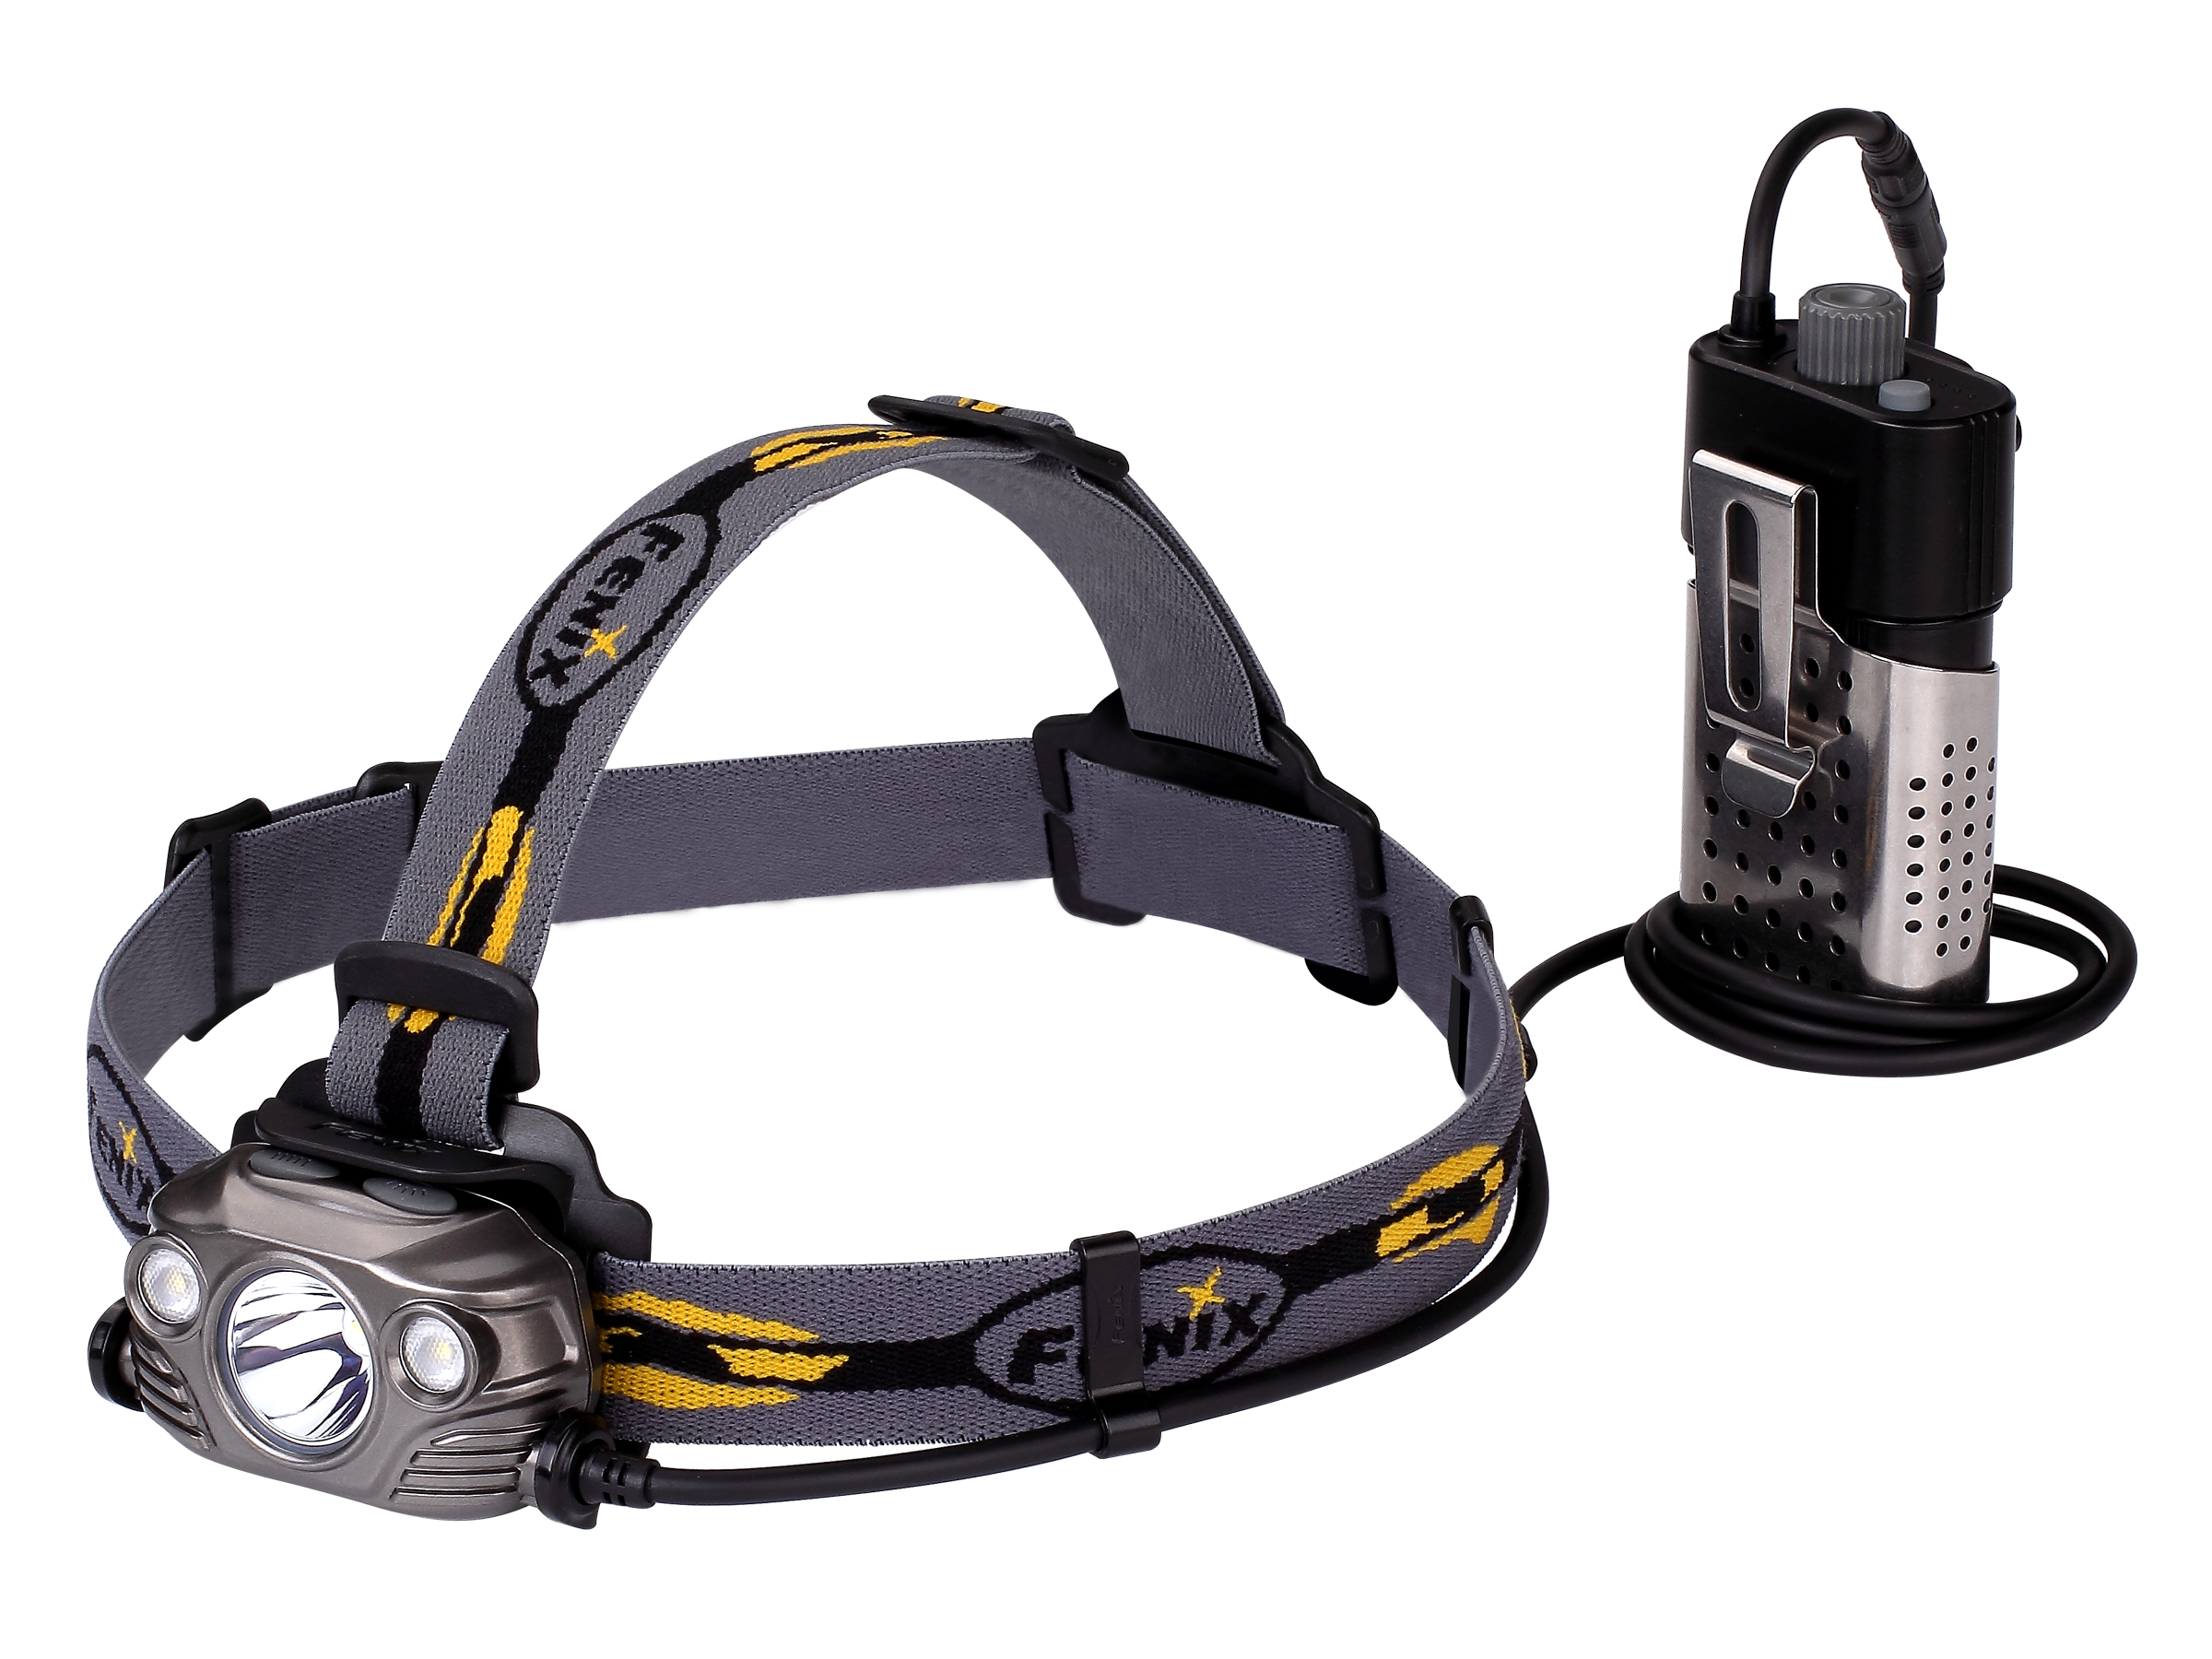 Fenix Stirnlampe hp 30r-1 Stirnlampe mit max. 1750 Lumen, 4 Helligkeitsstufen und SOS-Modus. Aus robustem Aluminium mit nur 285g. Verlängerungskabel und USB-Kabel im Lieferumfang enthalten.